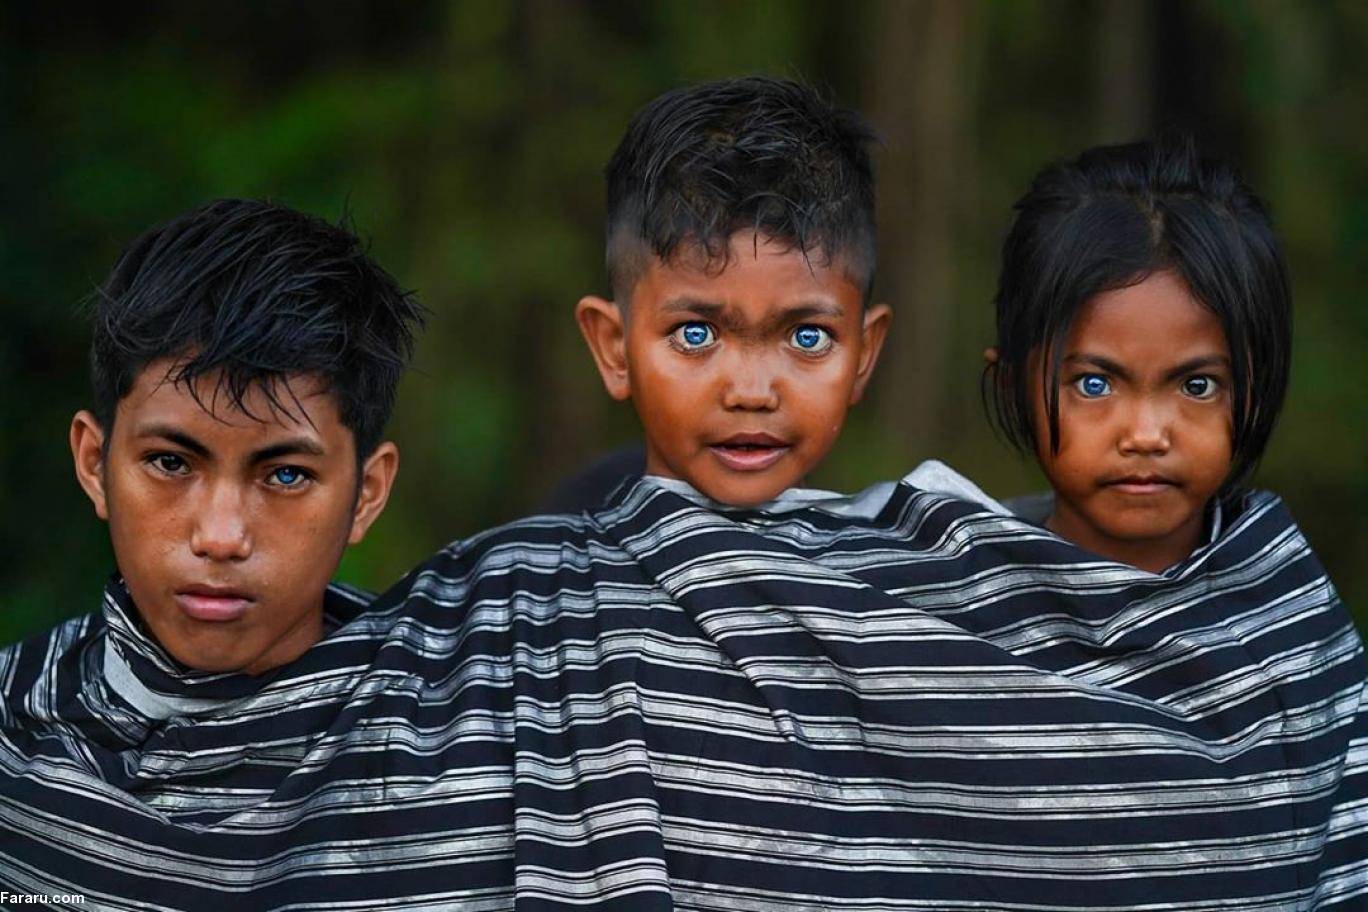 Черные национальности. Варденбурга синдром Ваарденбурга. Племя в Индонезии с синими глазами бутунг. Племя бутон на острове бутунг Индонезии.